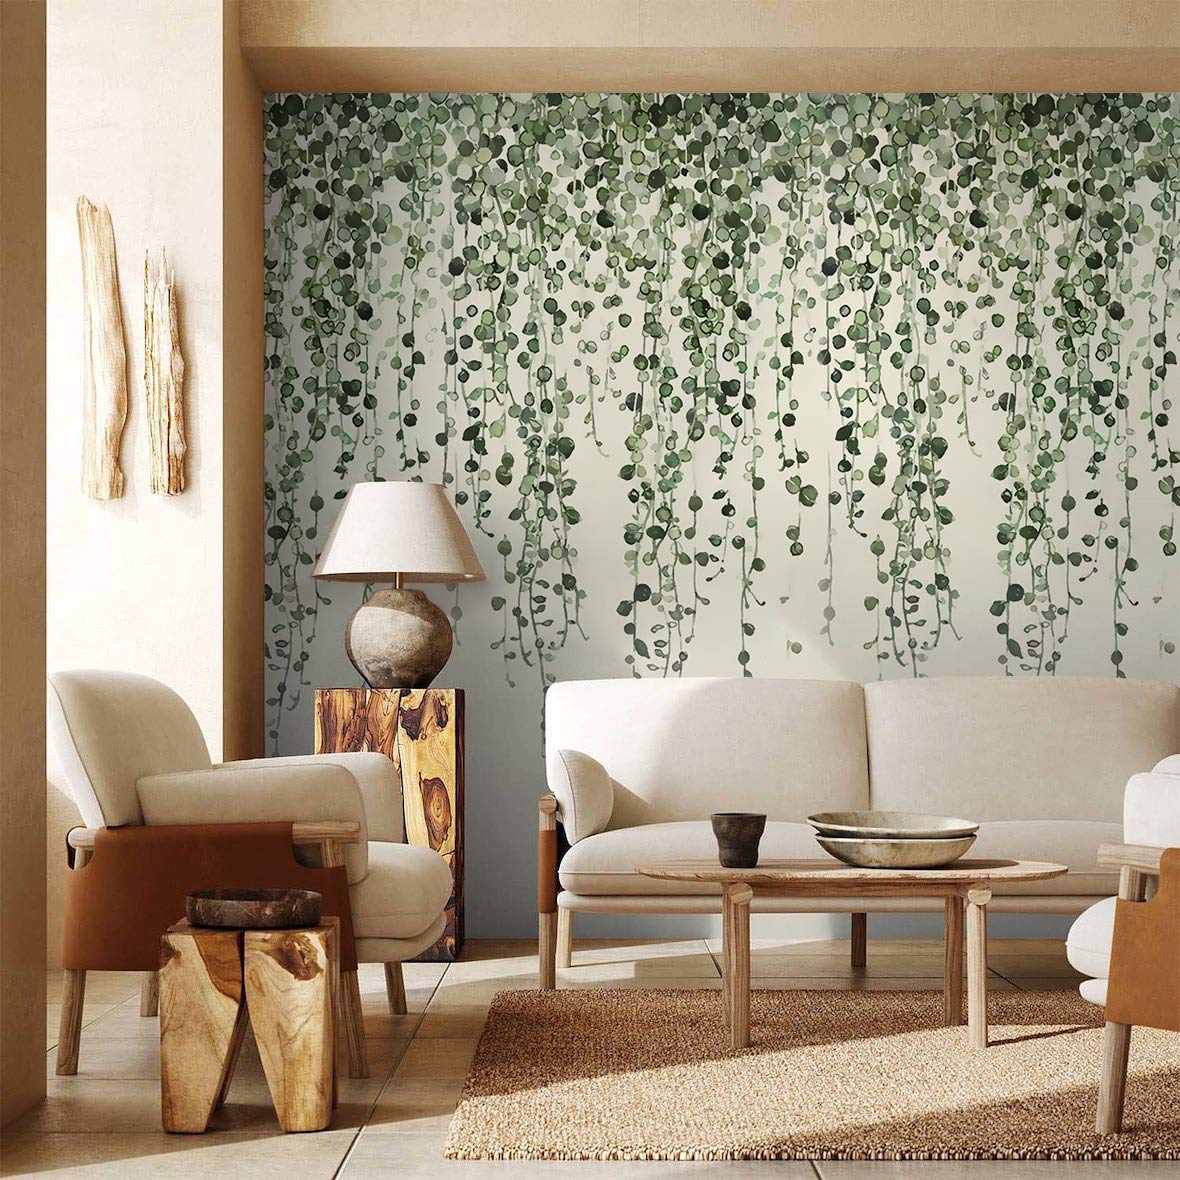 Fresh Vines Leaf Mural Decoration Design